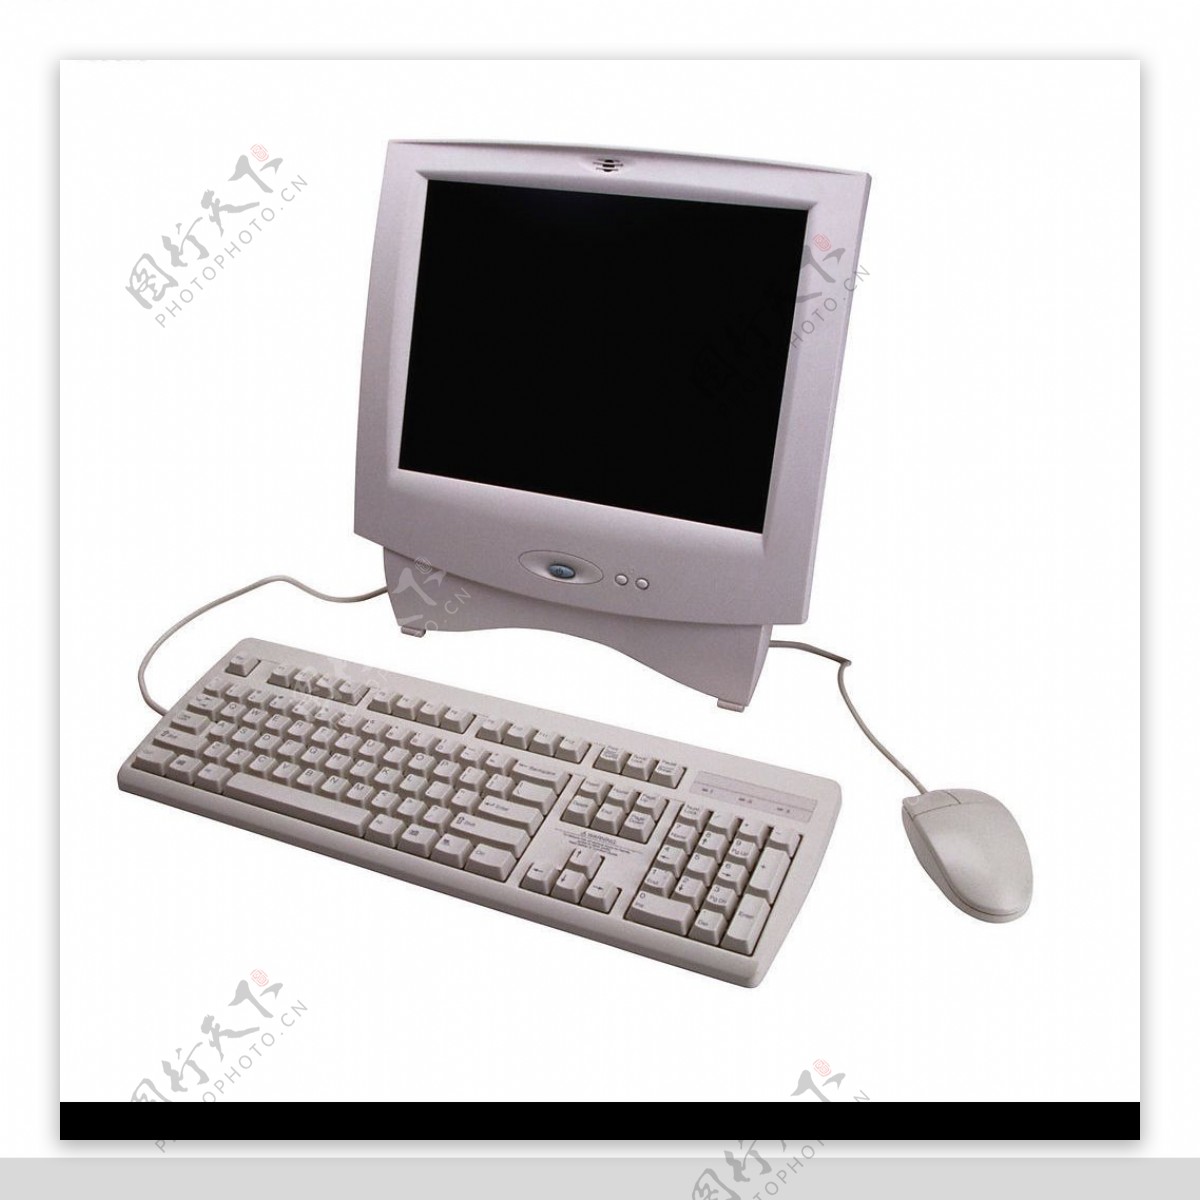 液晶显示屏与键盘鼠标12104图片